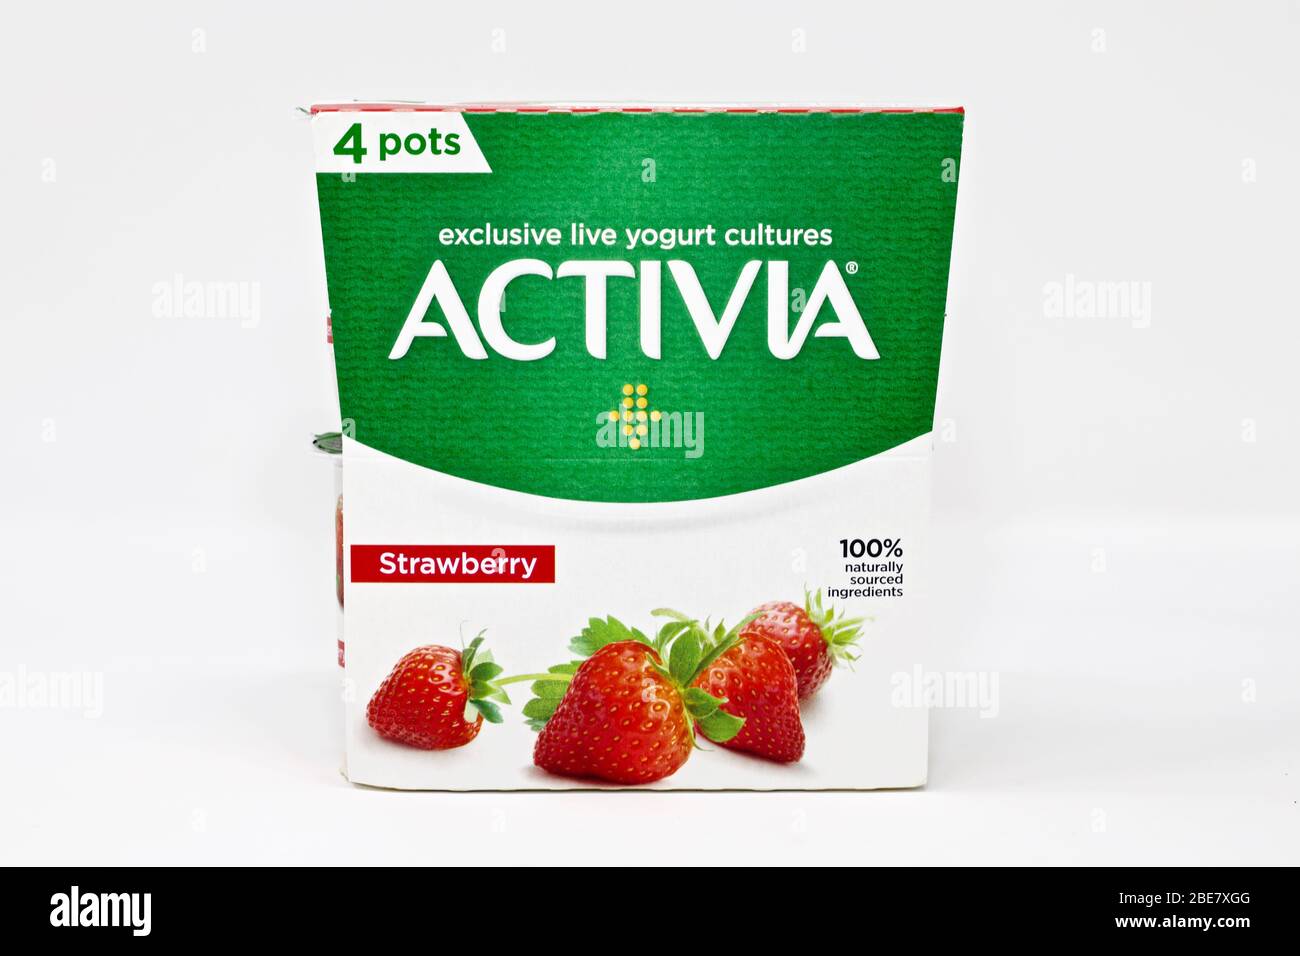 Alamy Activia Stock Strawberry Danone - Yogurt Photo